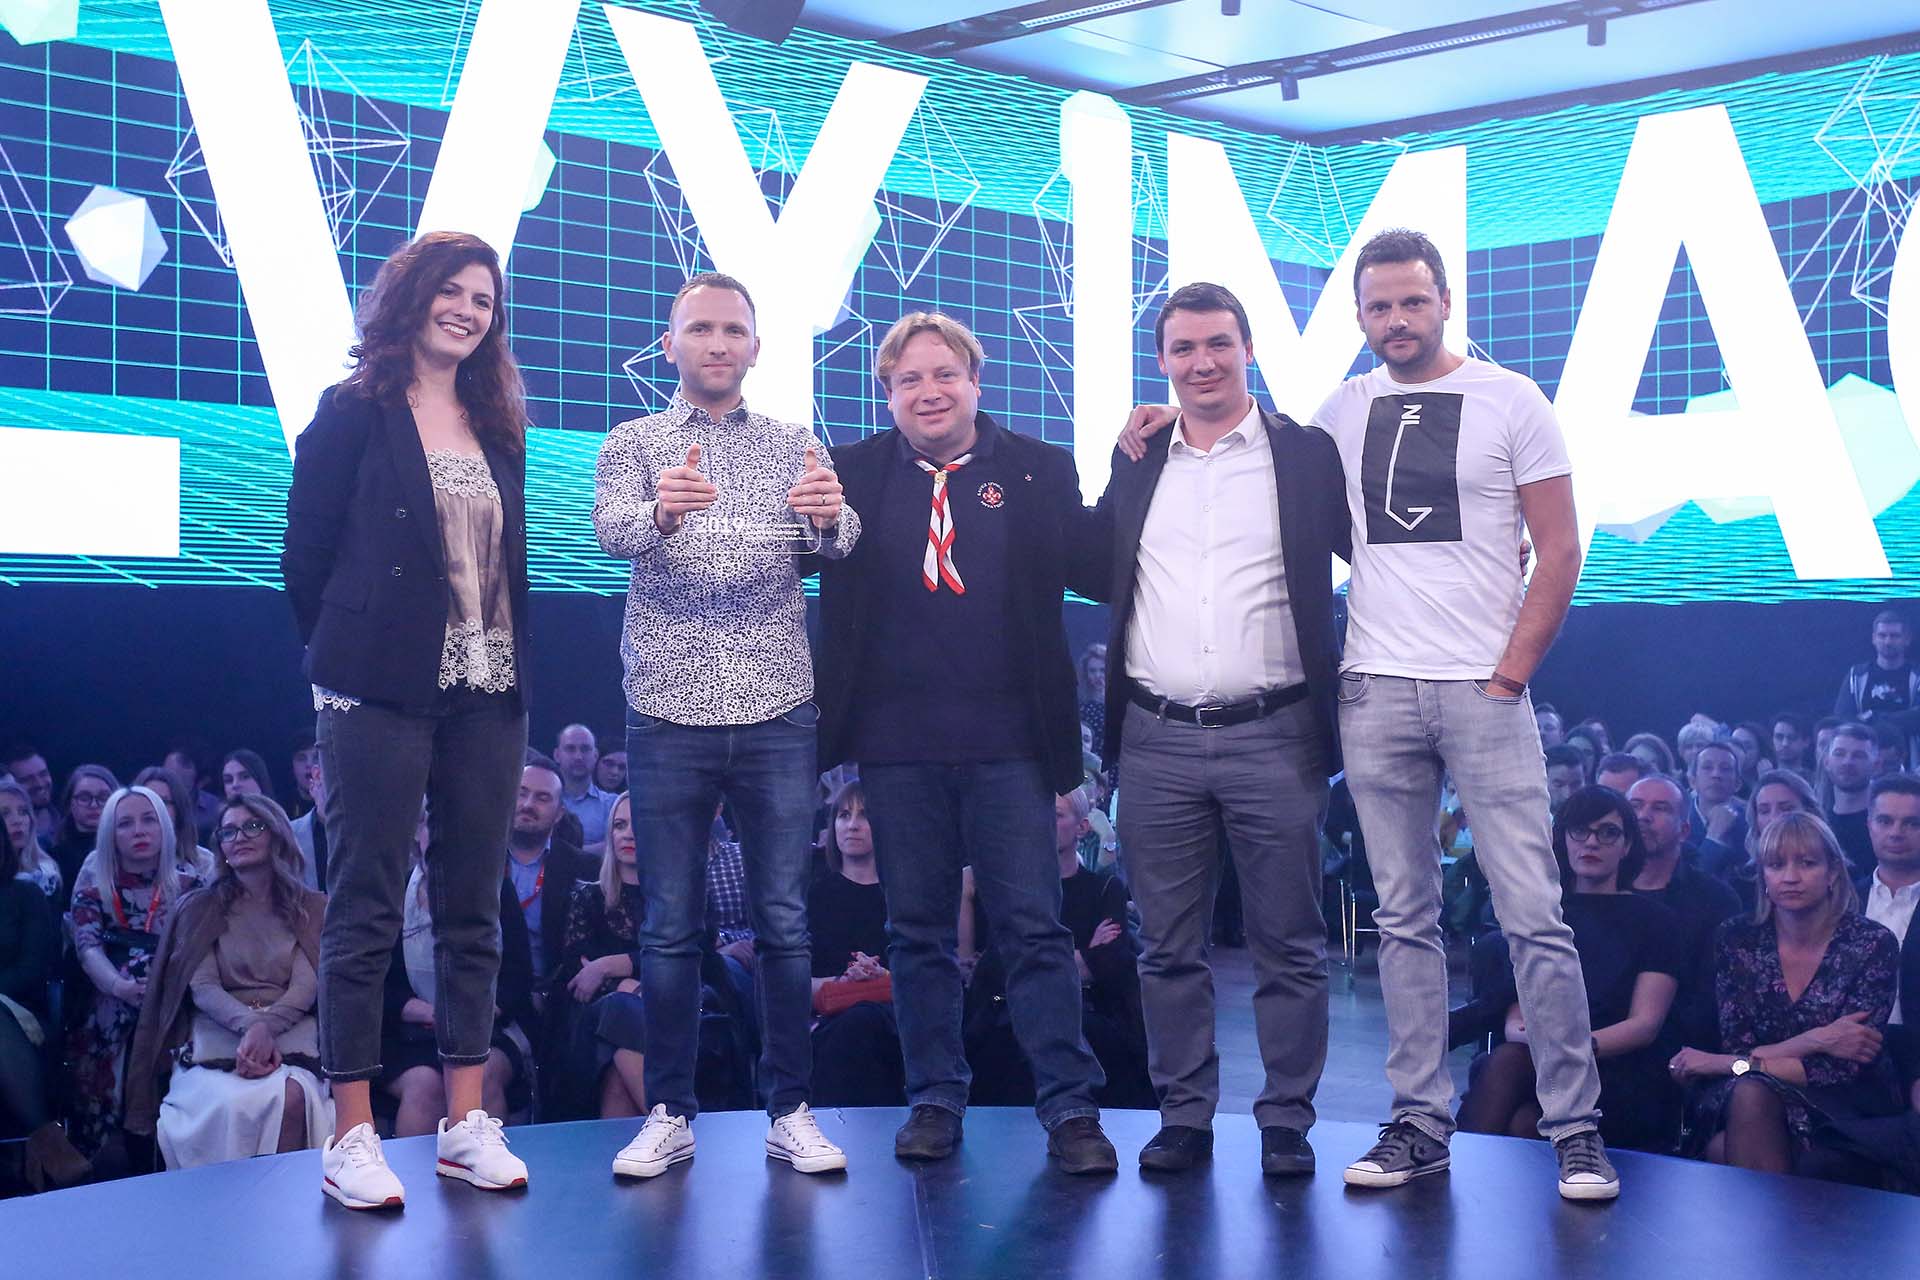 VANREDNA VIJEST: Boranka i agencija Imago Ogilvy osvojile nagradu Mixx Best in Show 1